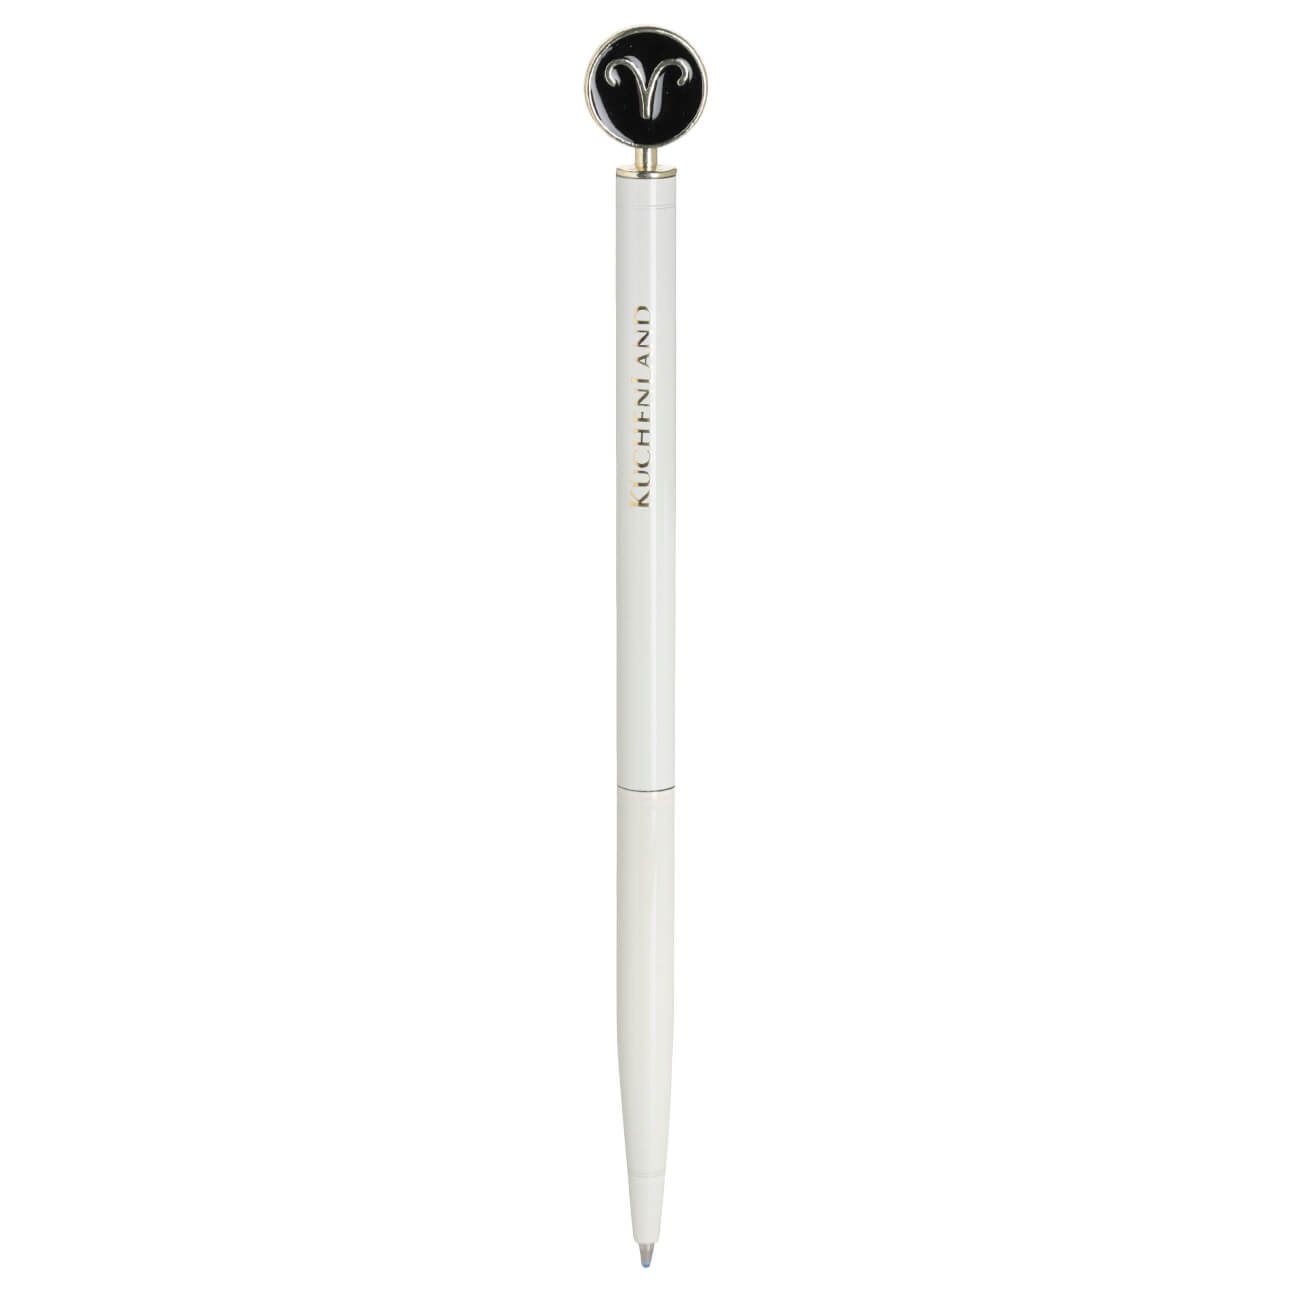 Ручка шариковая, 15 см, с фигуркой, сталь, молочно-золотистая, Овен, Zodiac ручка шариковая